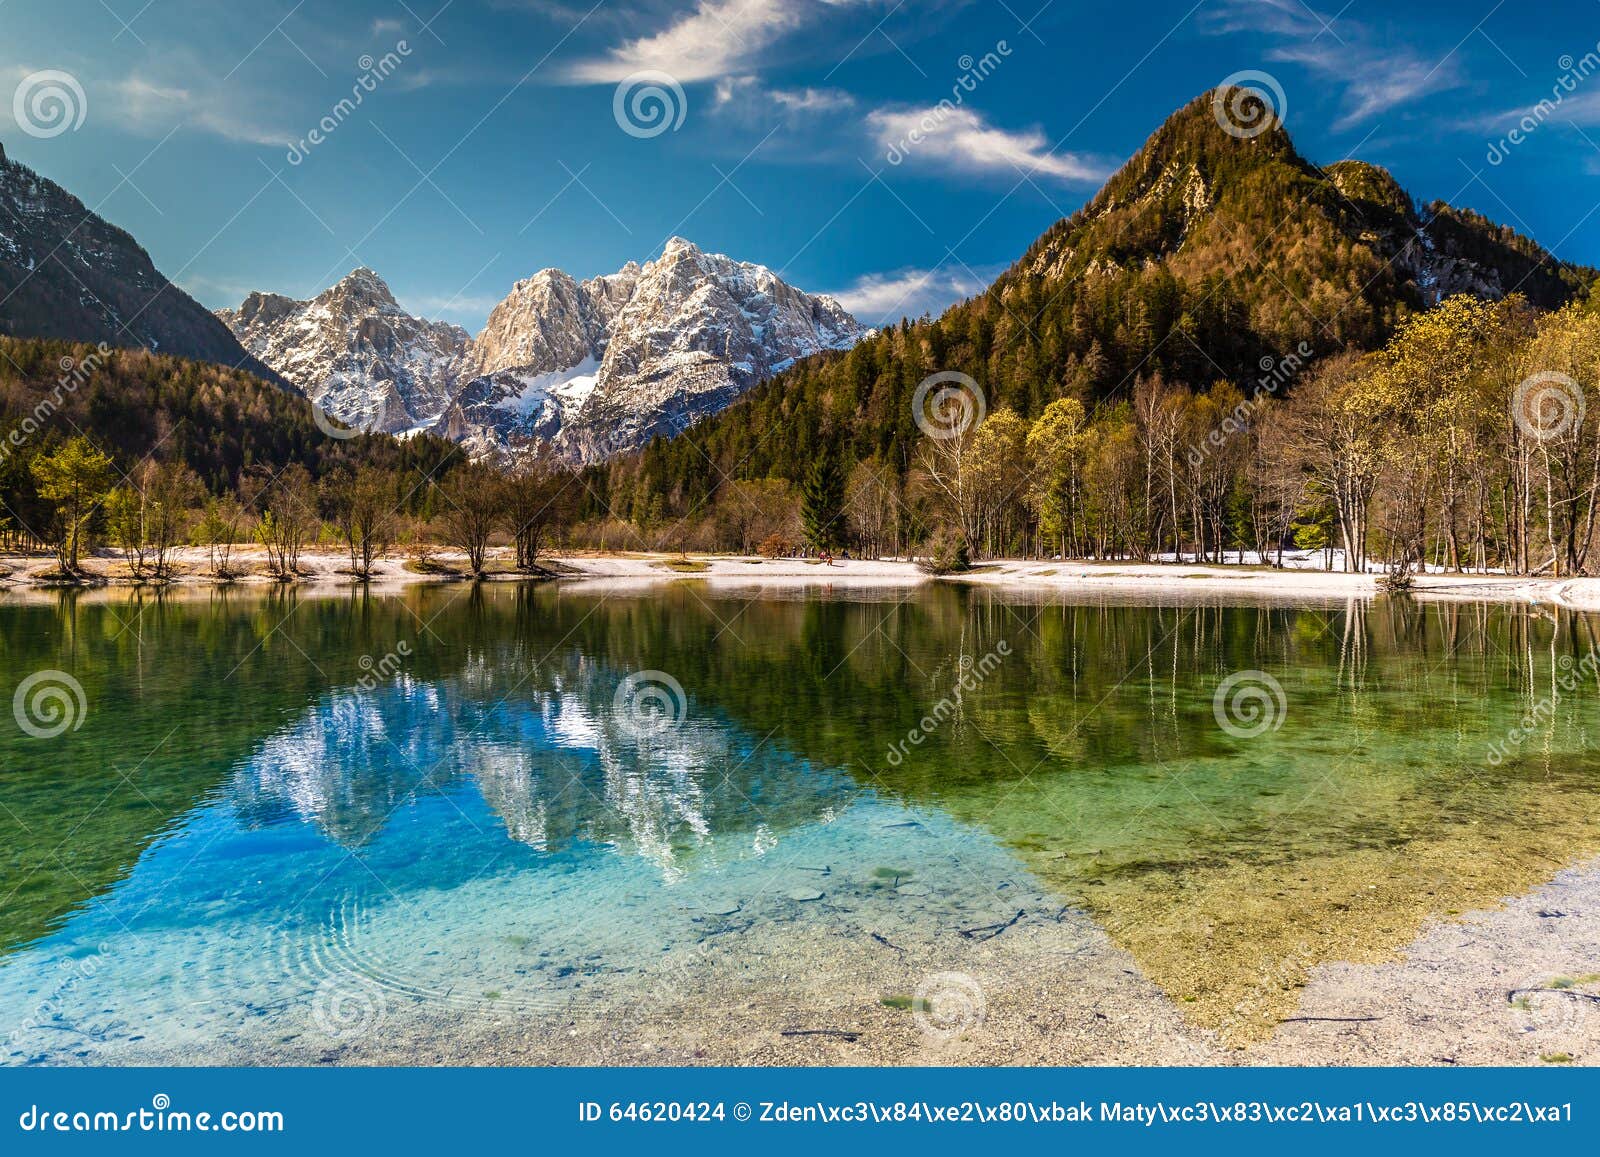 jasna lake,mountain range-kranjska gora,slovenia